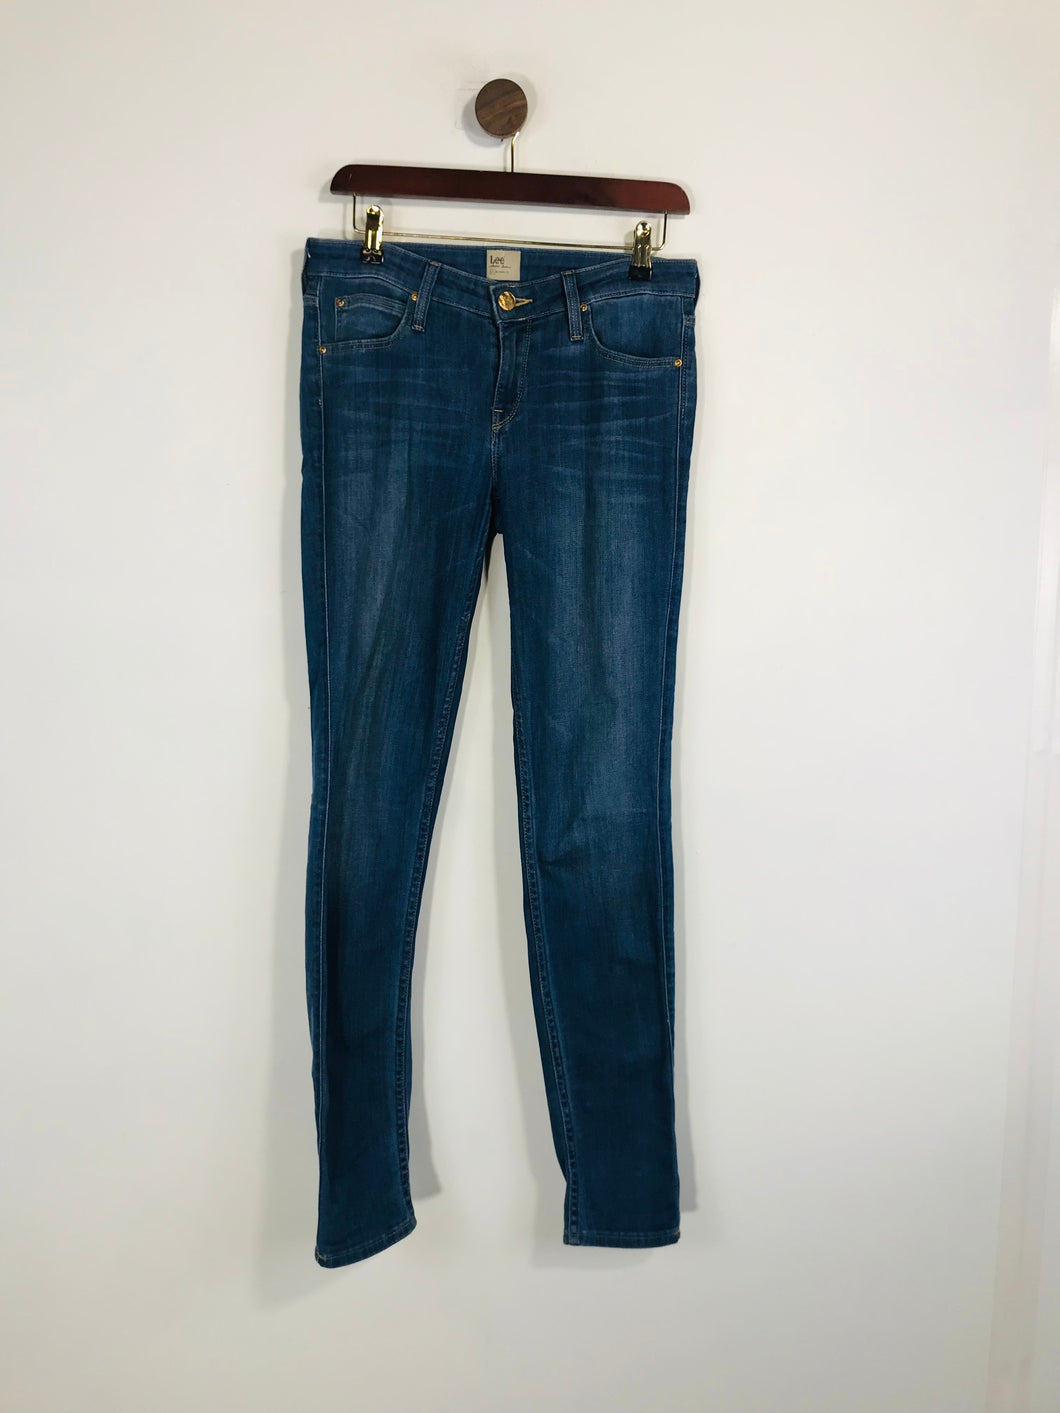 Lee Women's Skinny Jeans | W27 UK8-10 | Blue